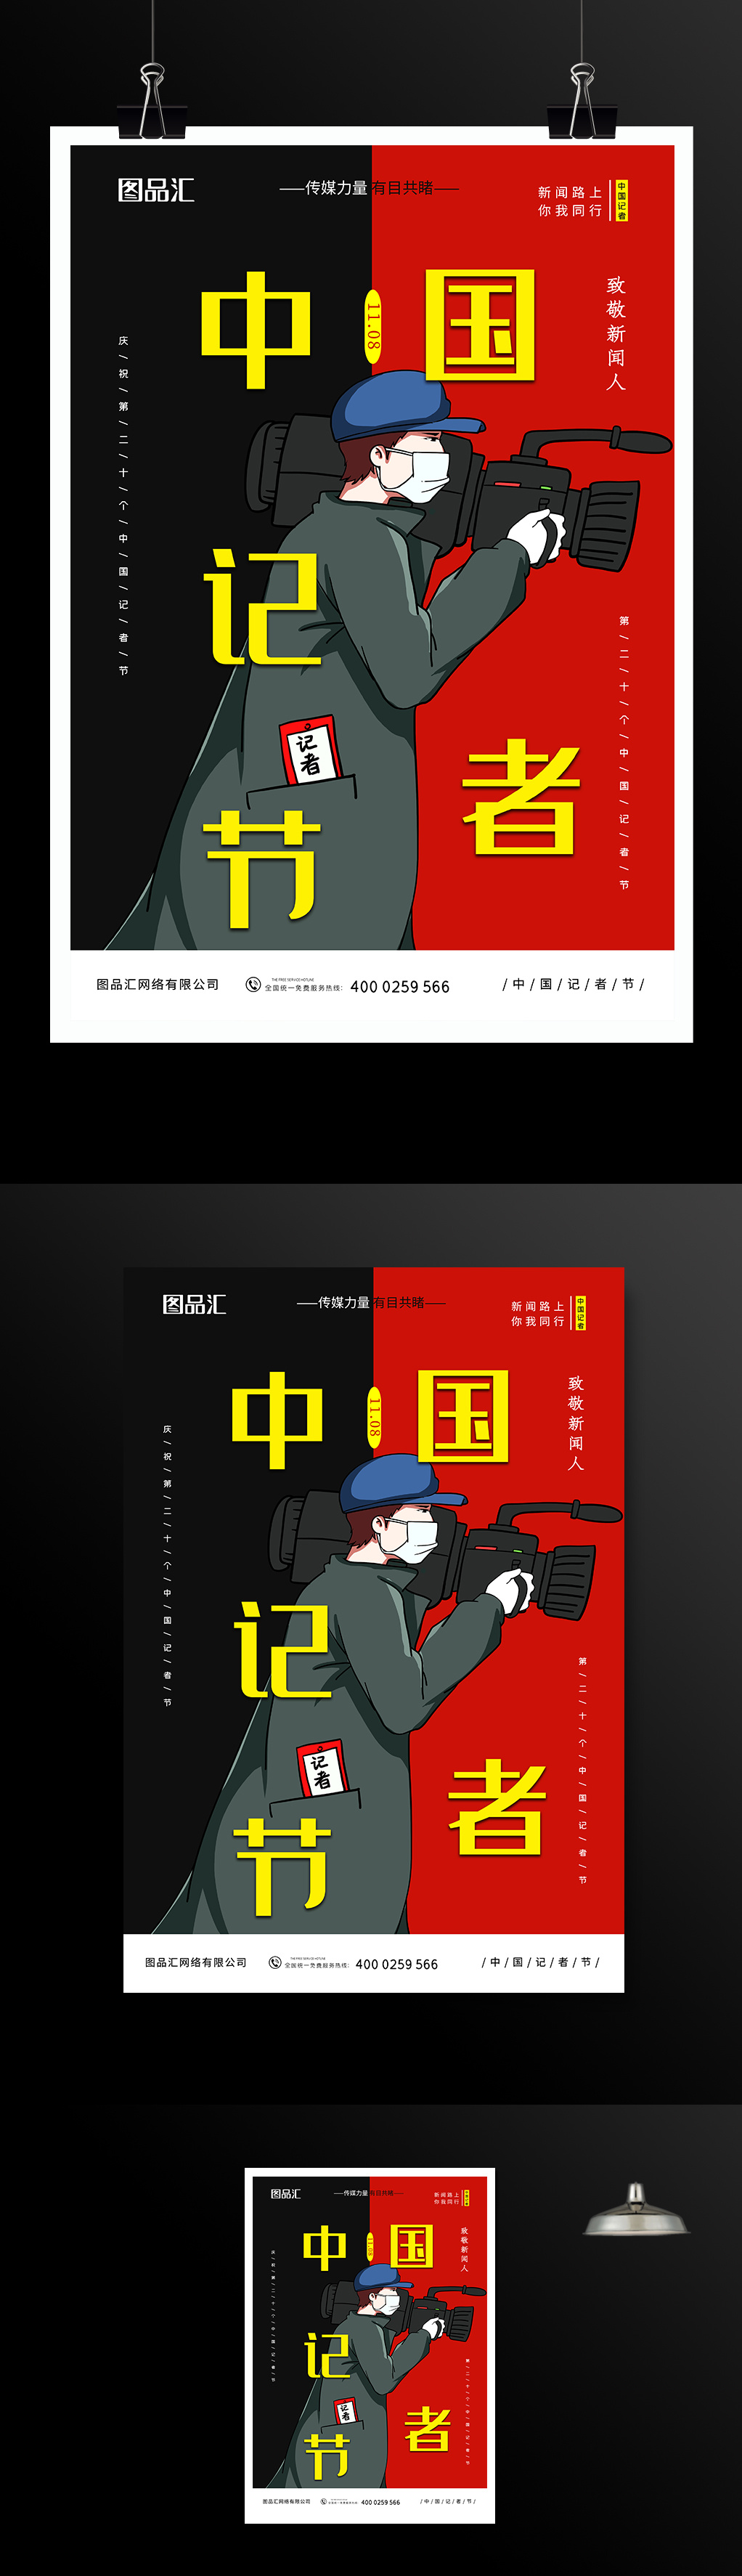 黑红撞色中国记者节宣传海报